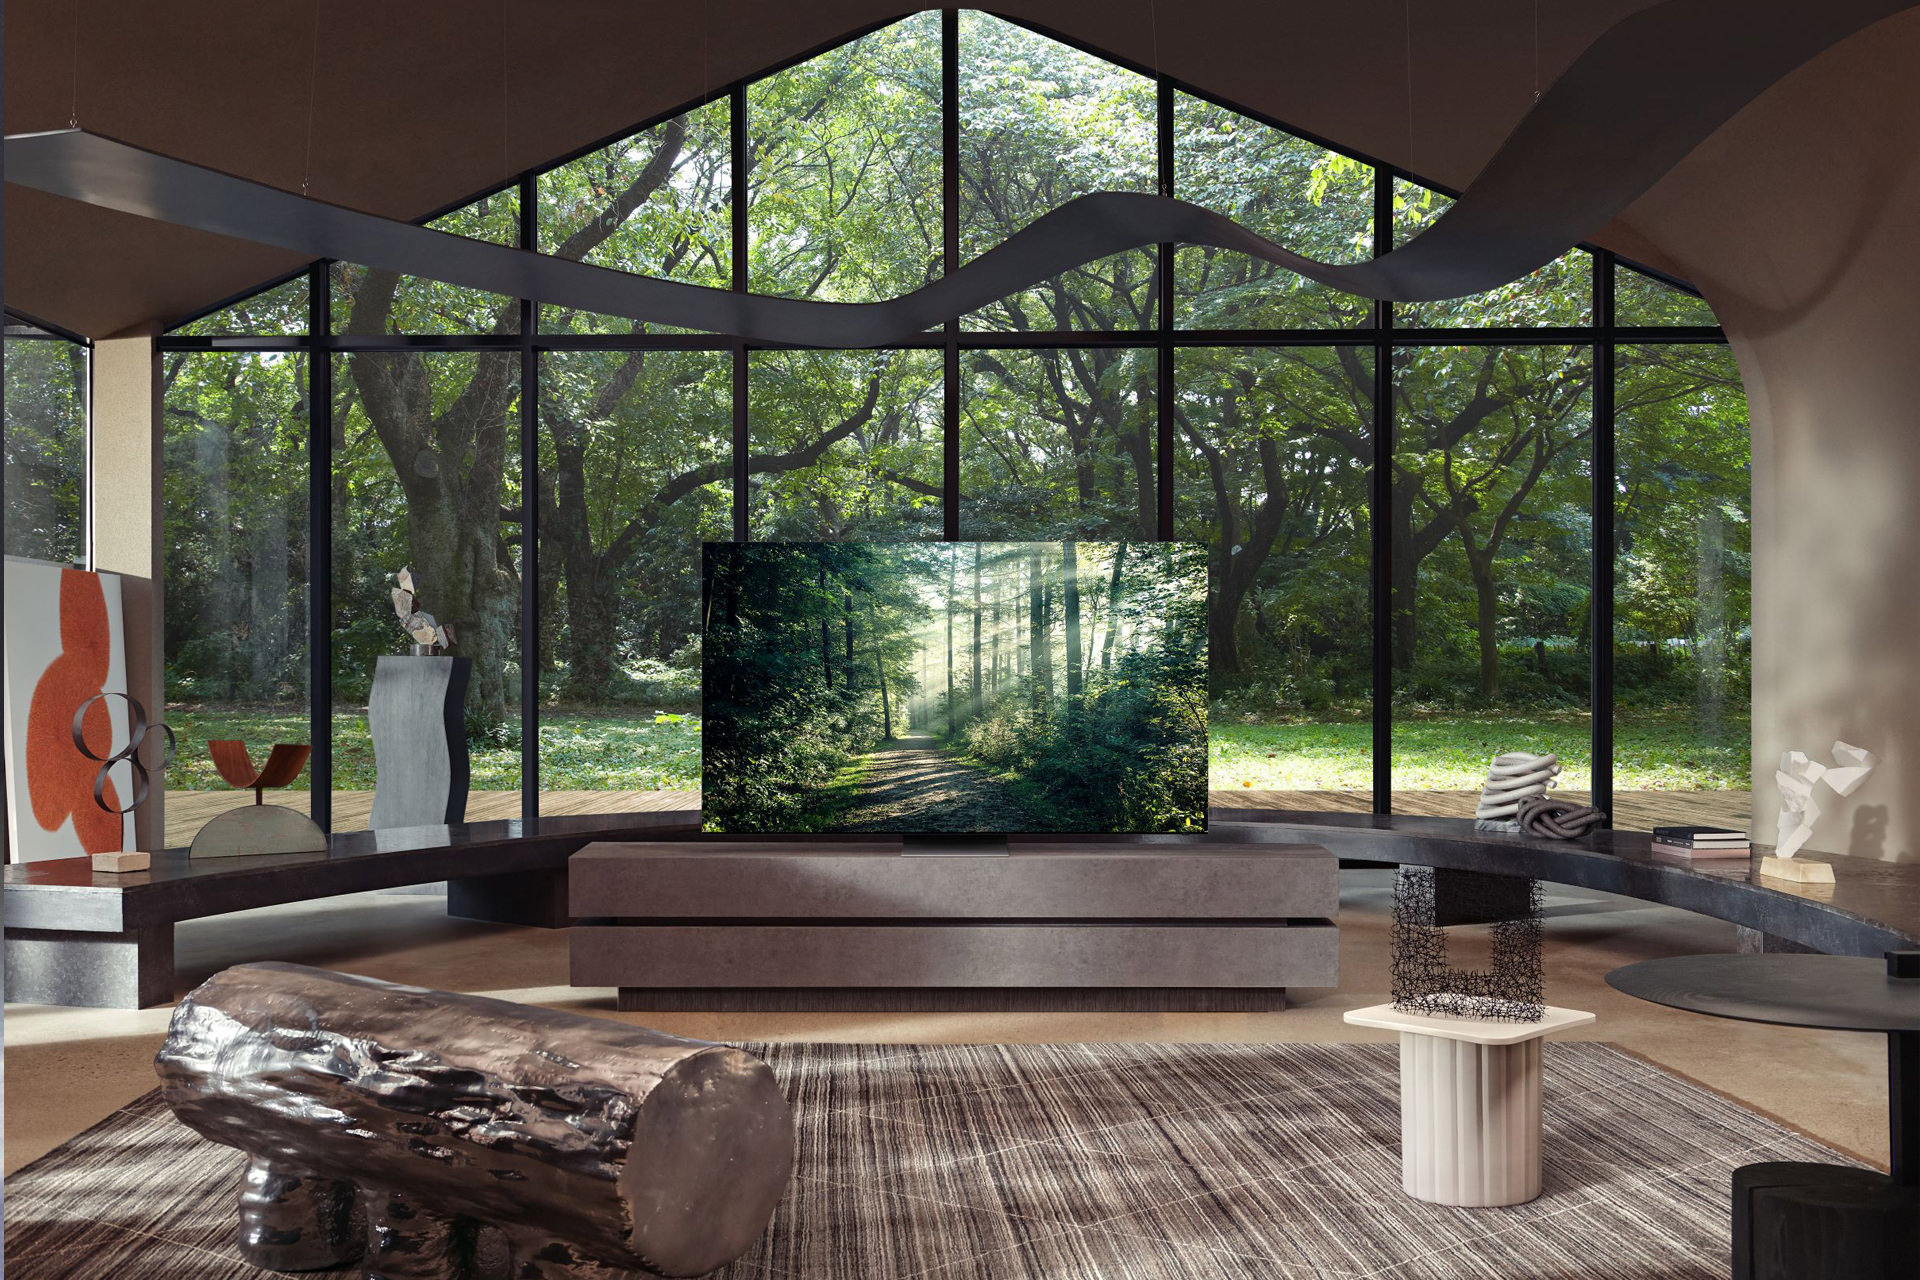 تلویزیون Neo QLED 2021 سامسونگ از نمای جلو در اتاق چوبی نمایش درخت